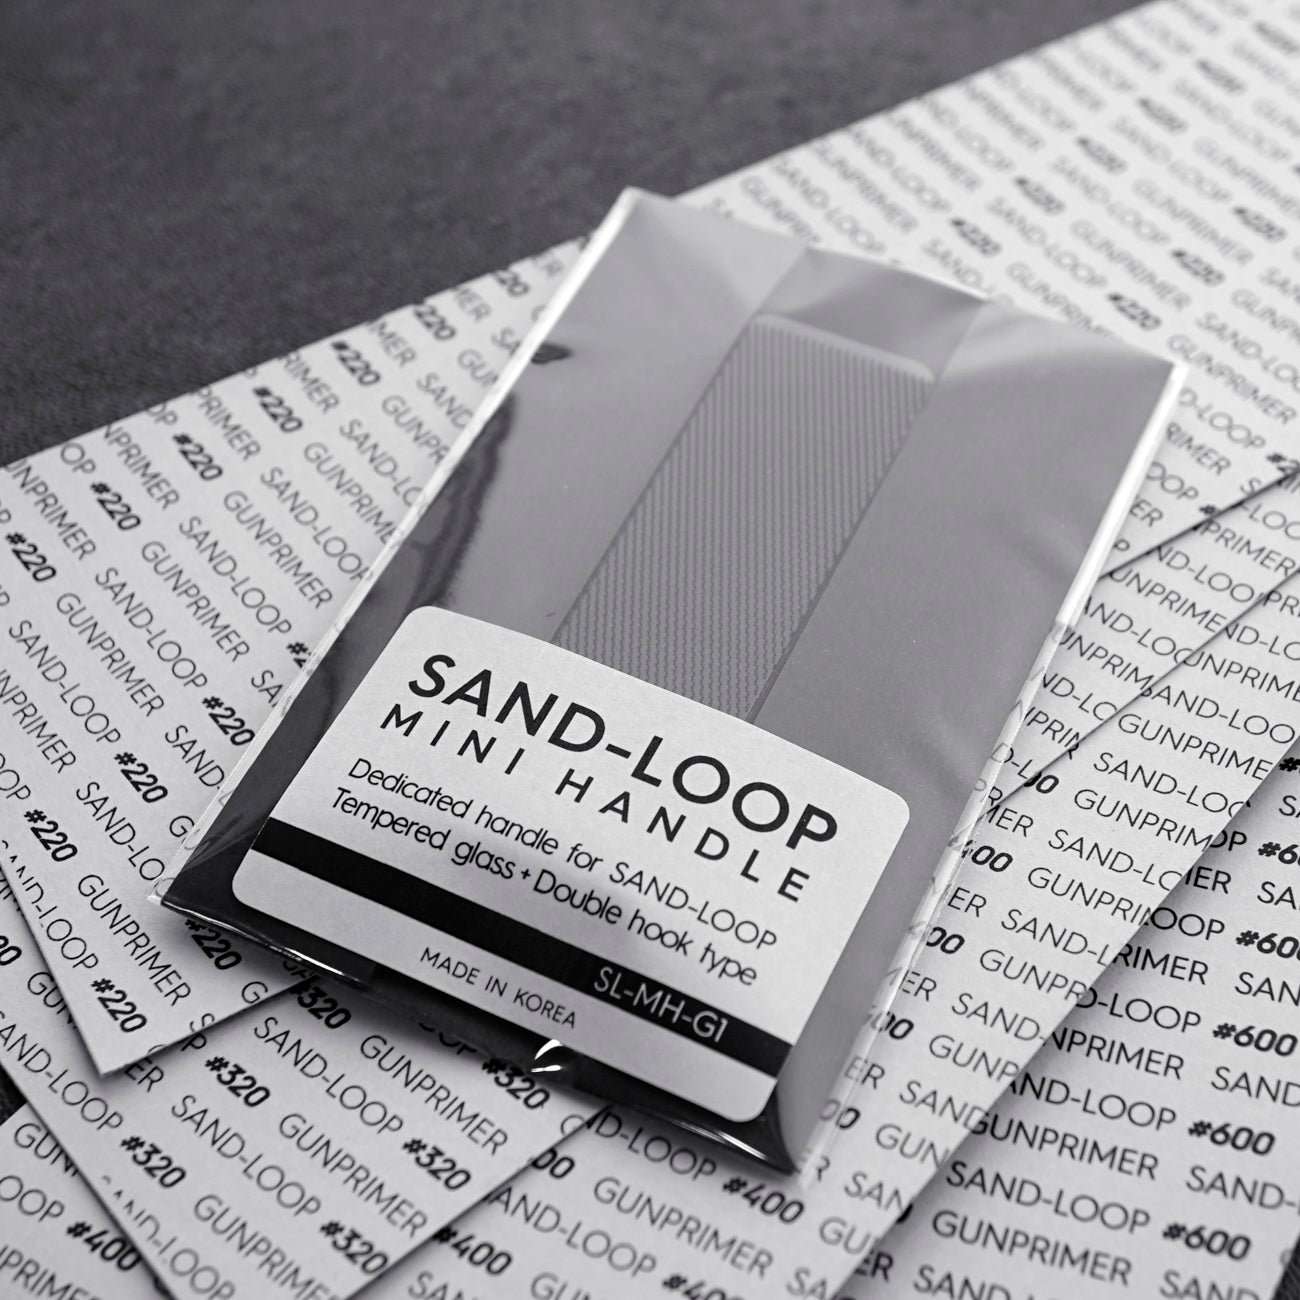 Sand-Loop mini handle set